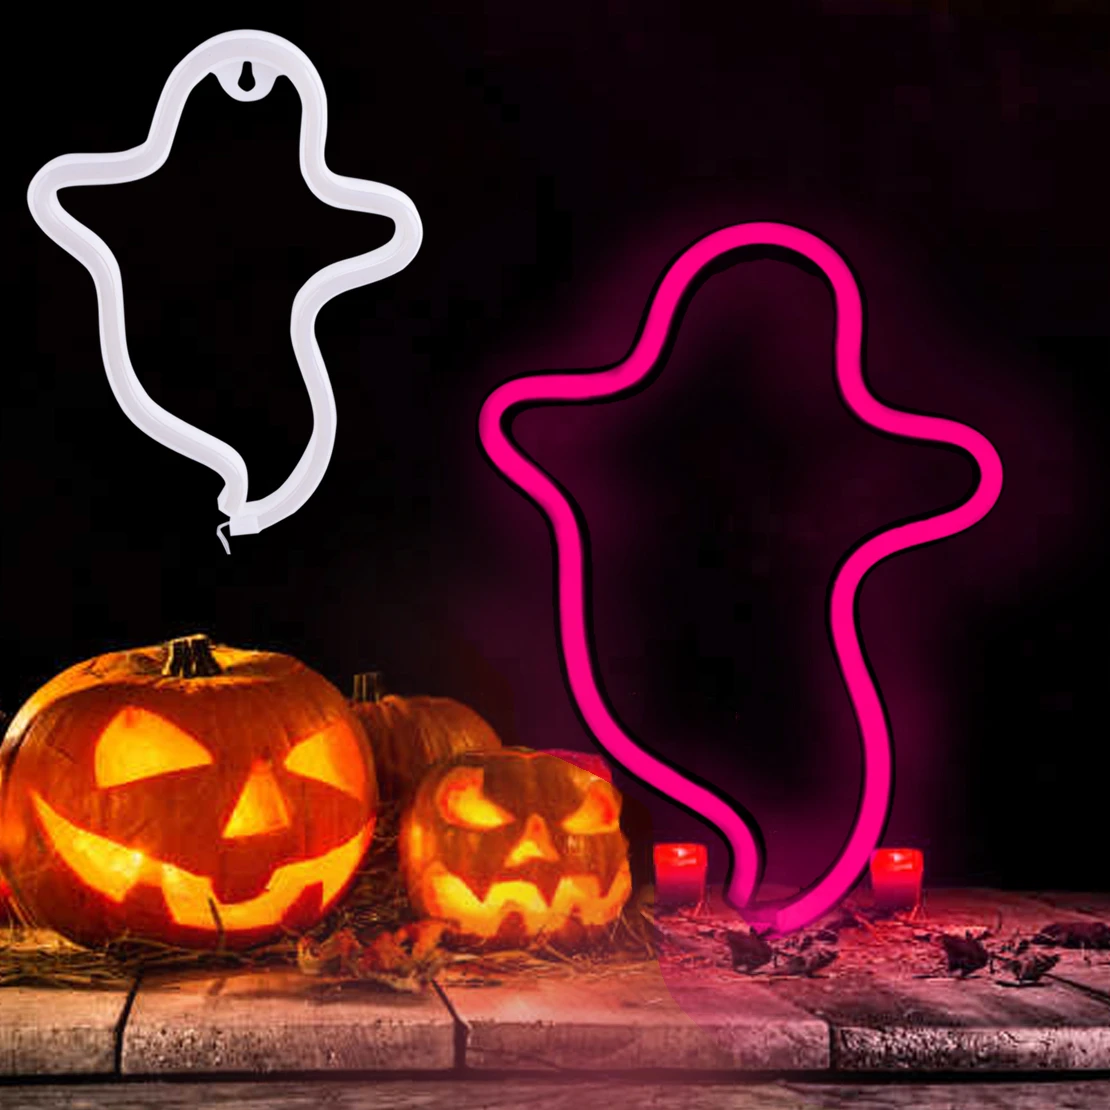 cumpleaños versus Cerebro Señal de luz LED de neón fantasma de Halloween, accesorio de decoración  para fiesta encantada, azul/rosa/blanco, nuevo|Decoraciones DIY de fiestas|  - AliExpress